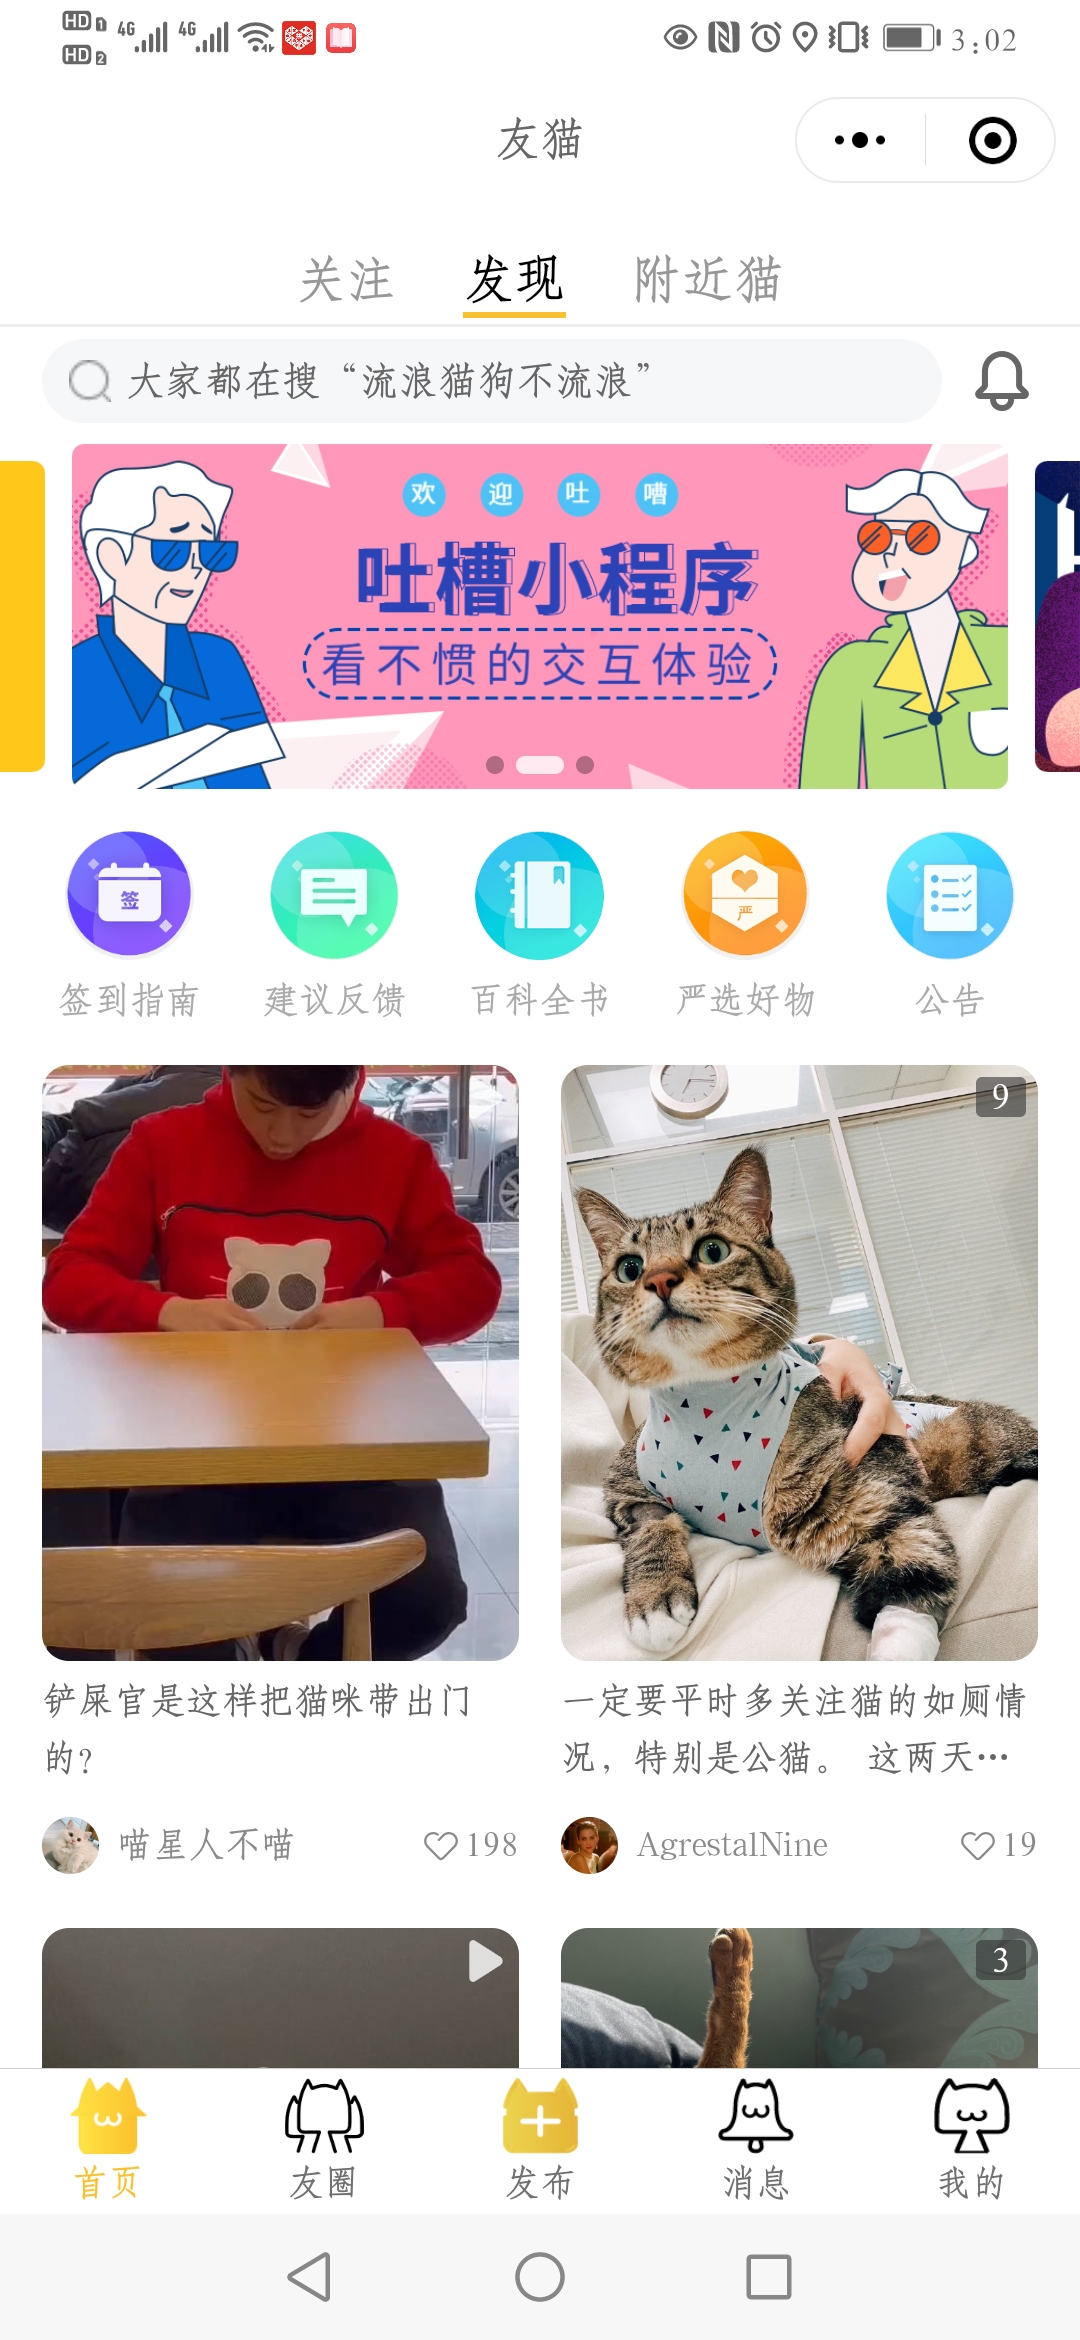 宜州宠物猫社交社区平台